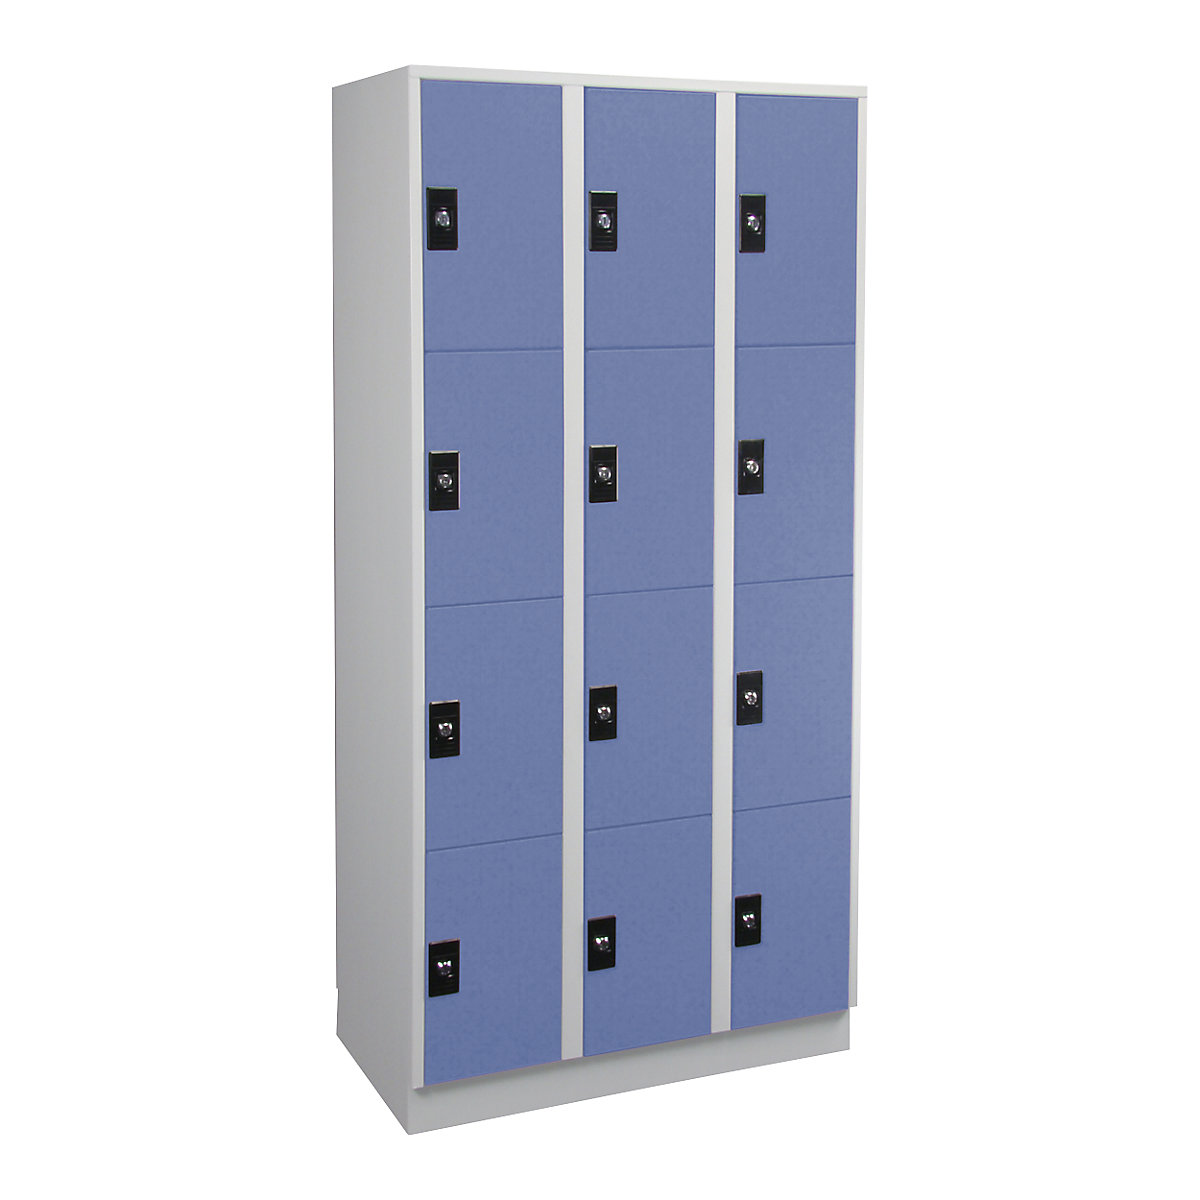 Vestiaire multicases – Wolf, 3 compartiments, 4 cases par compartiment, gris clair / bleu pigeon-4